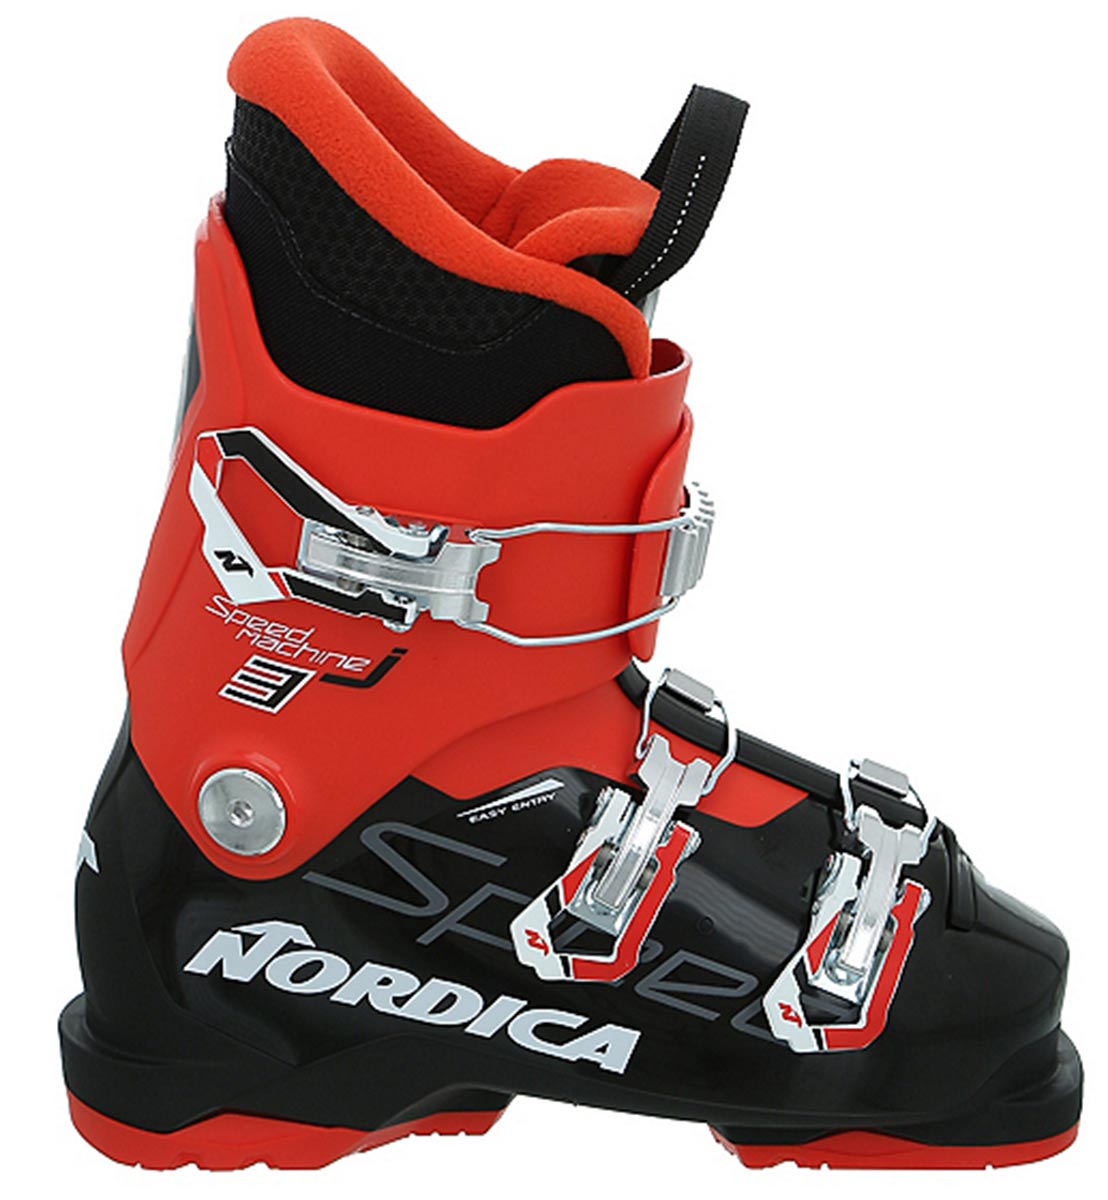 nordica-speedmachine-j3-ski-boots-2021